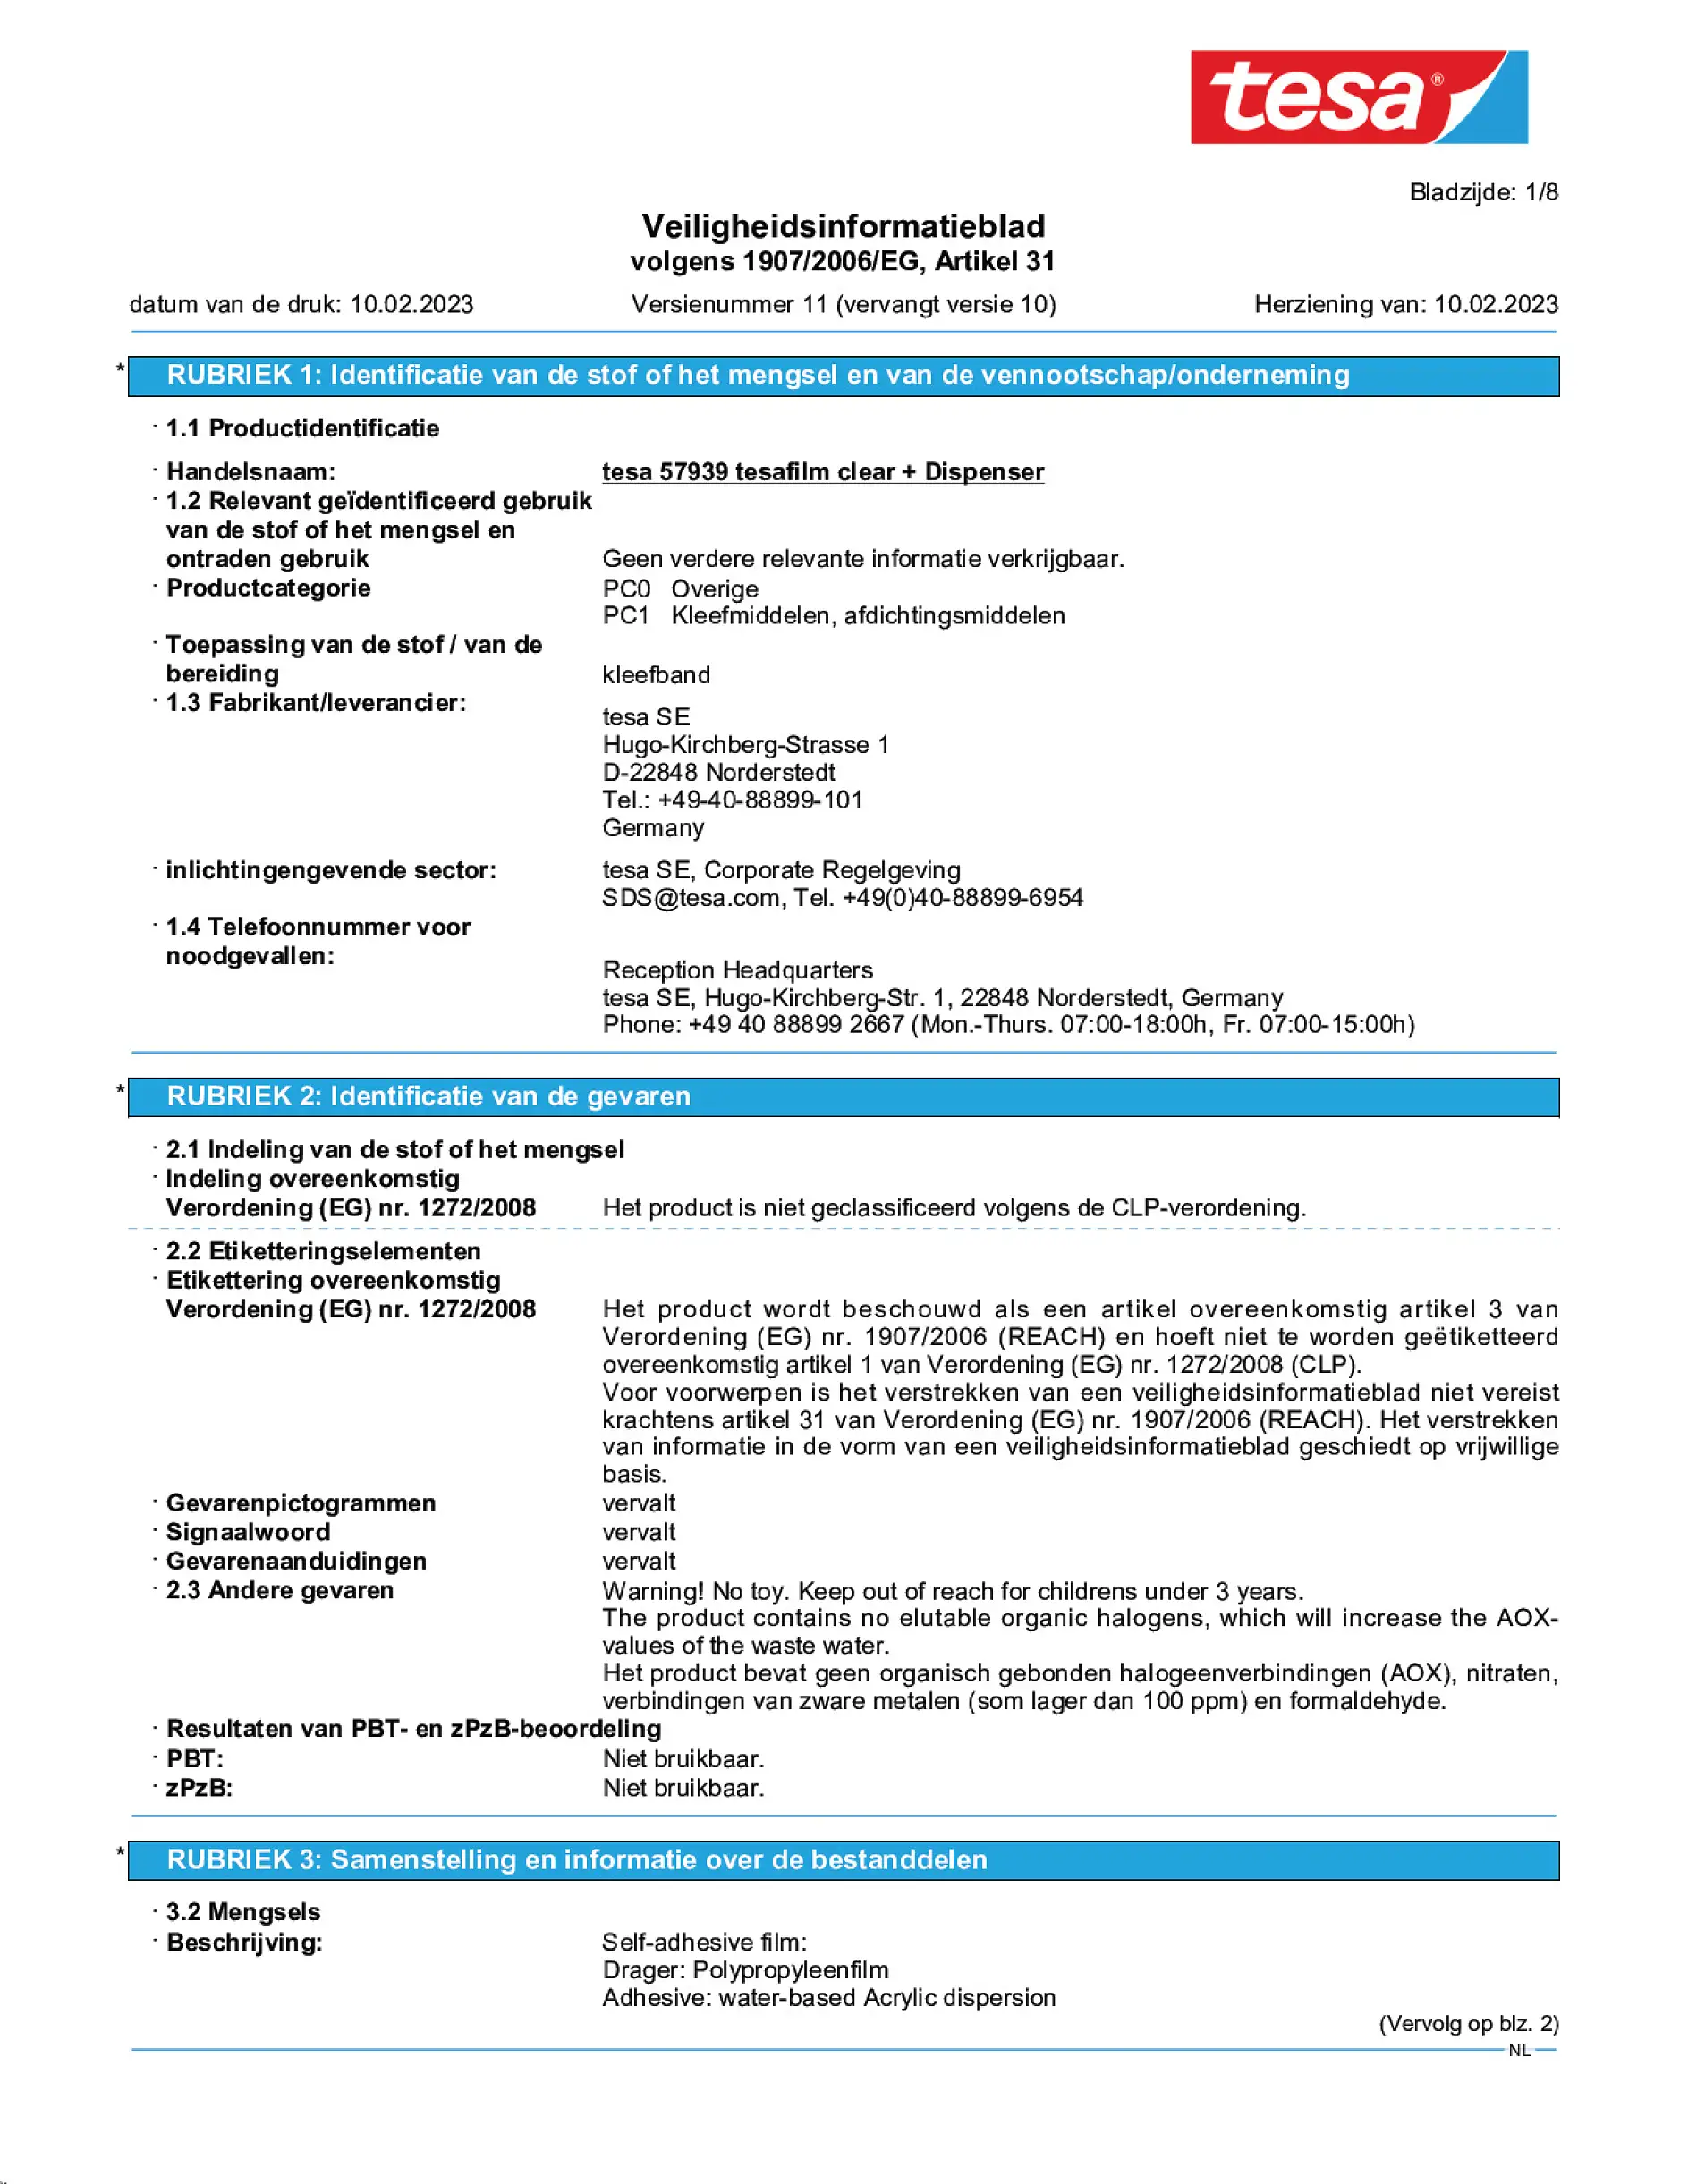 Safety data sheet_tesafilm® 57928_nl-NL_v11